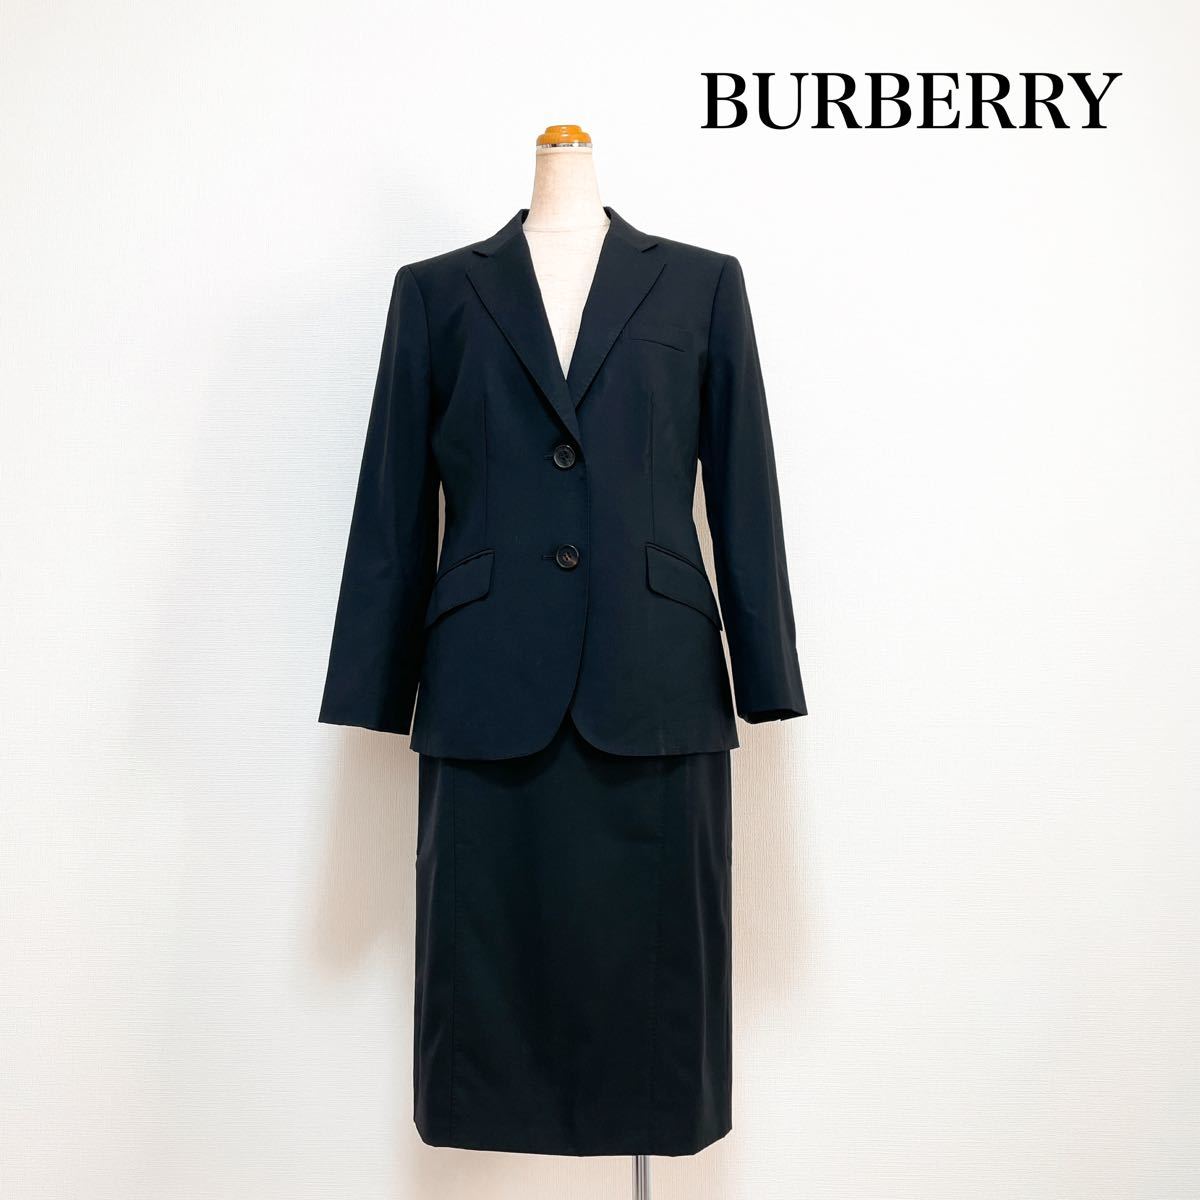 BURBERRY LONDON バーバリーロンドン スカートスーツ セットアップ 黒